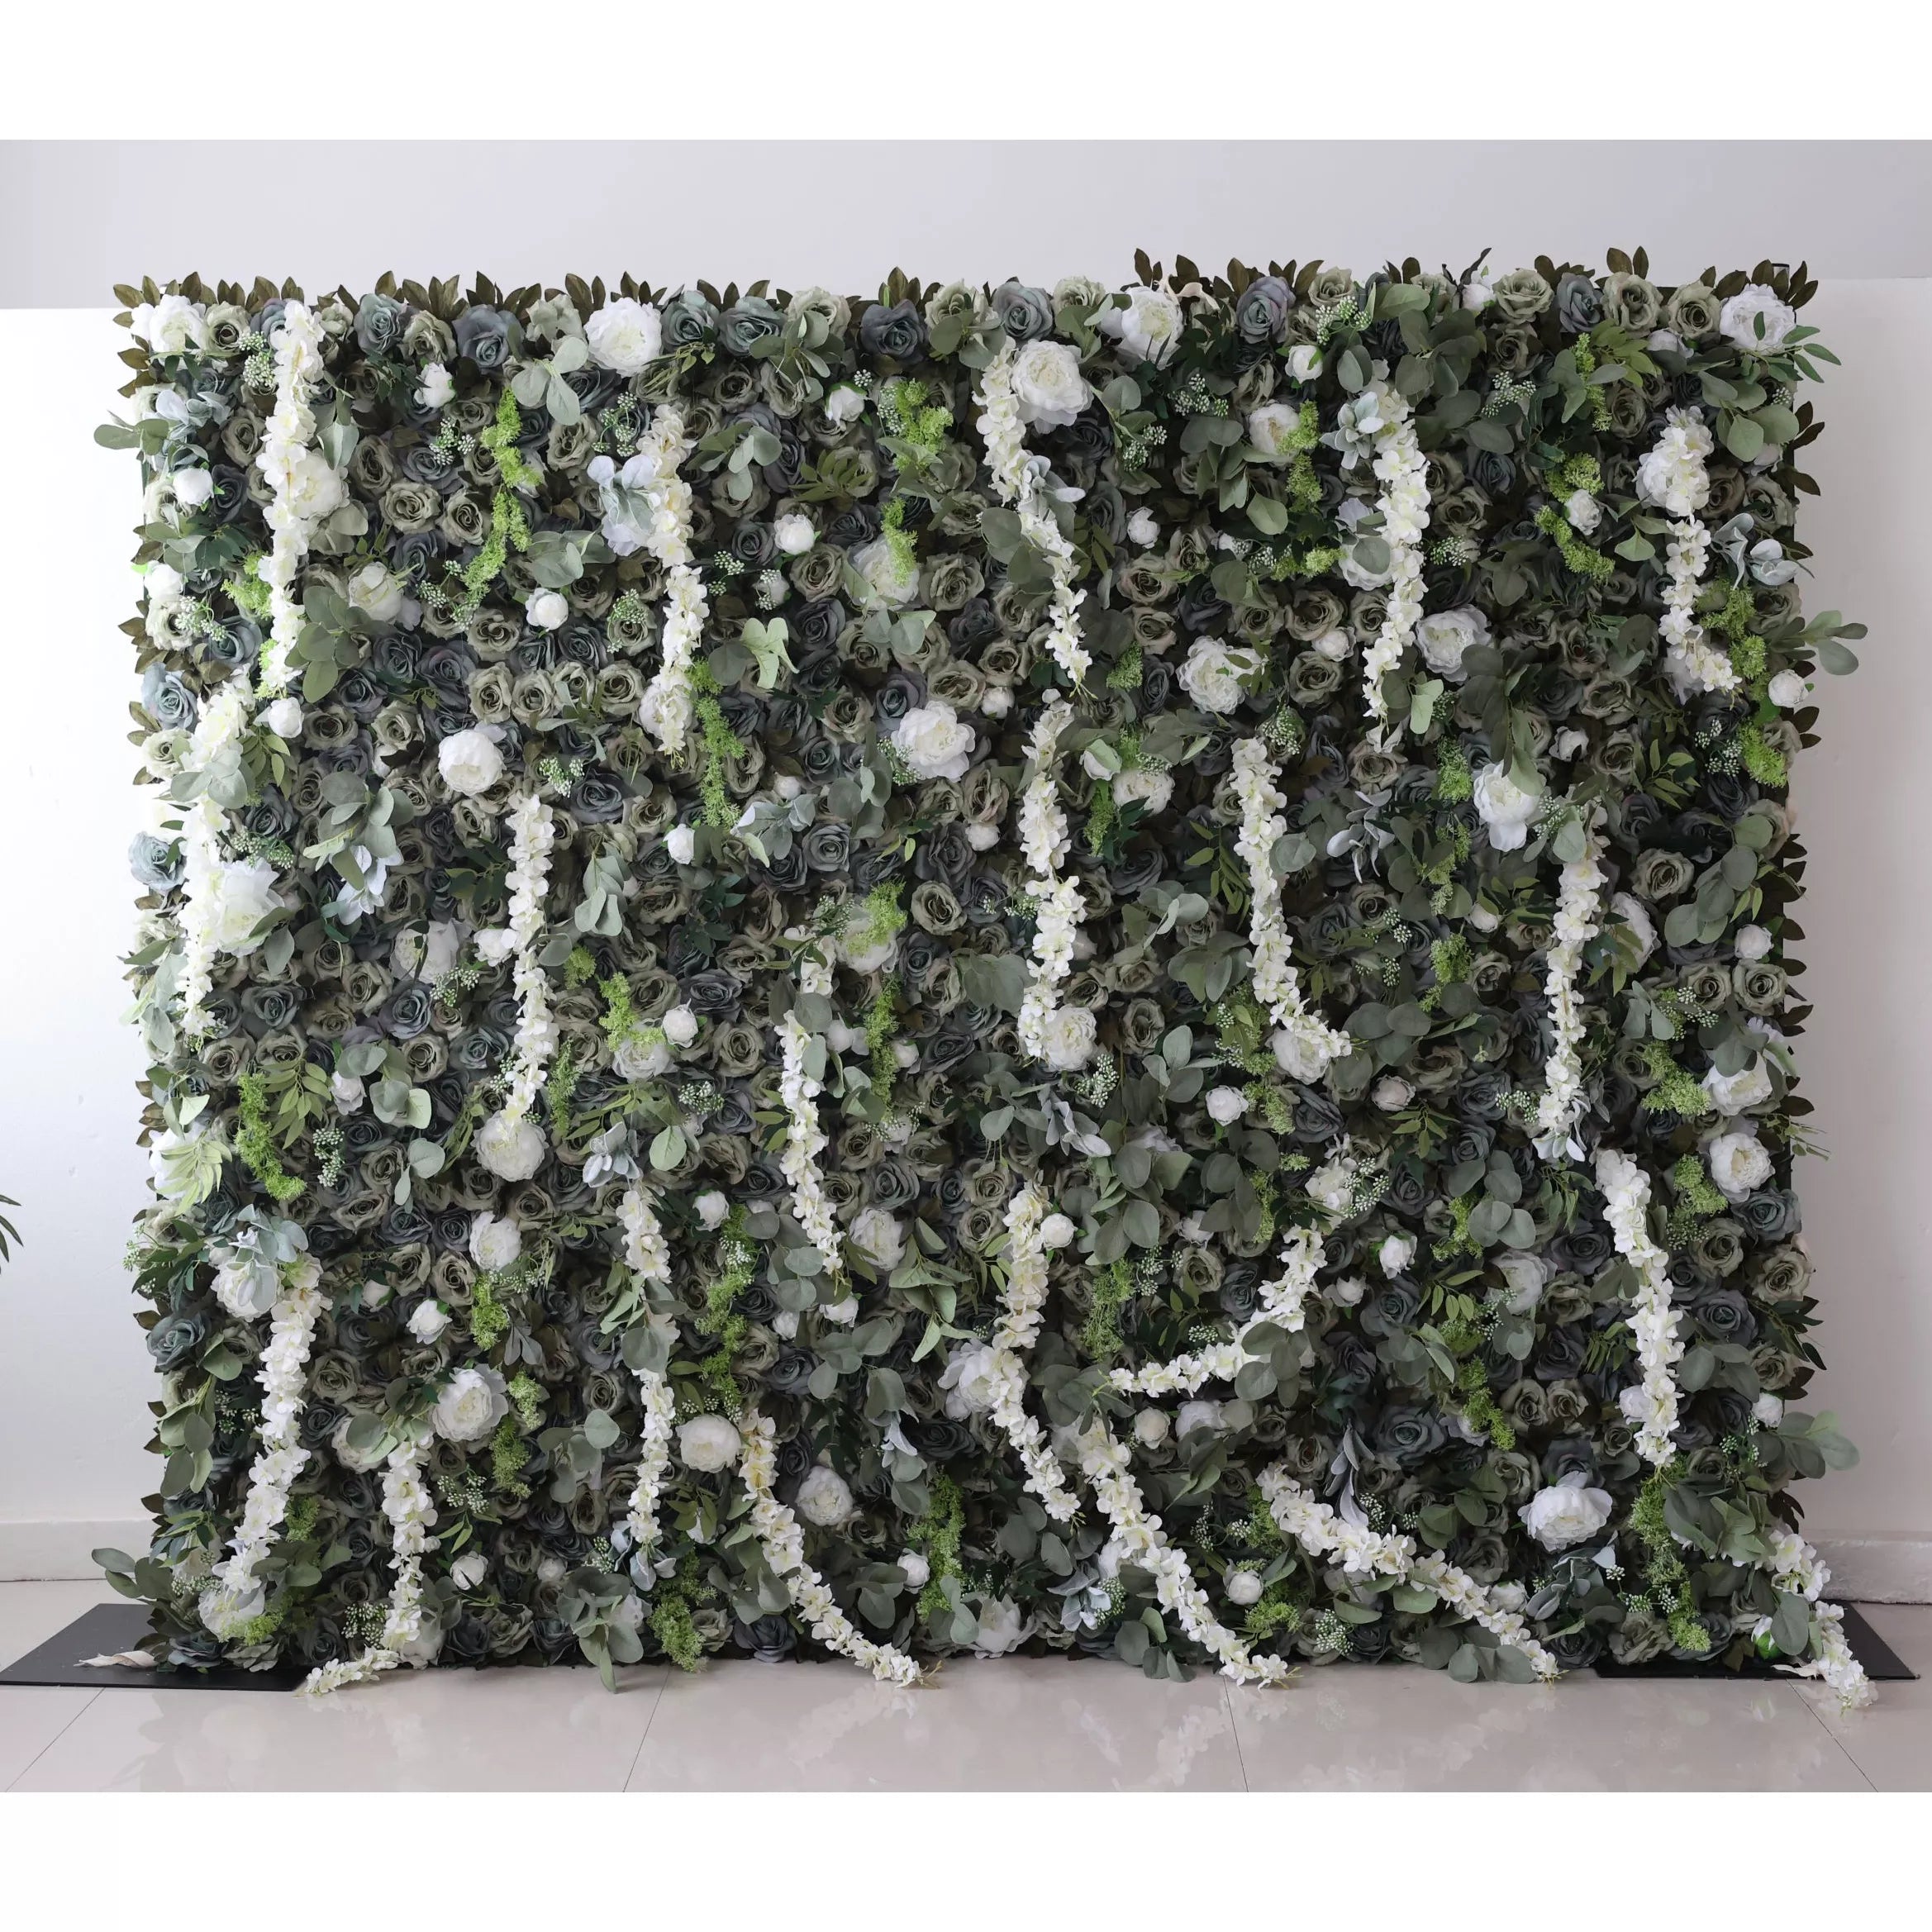 Valar Flowers présente : Verdant Elysium – Un mélange luxuriant de feuillage vert et de fleurs blanches en cascade – Le mur par excellence inspiré de la nature pour les garden-parties, les événements à thème écologique et les intérieurs verts-VF-222-2